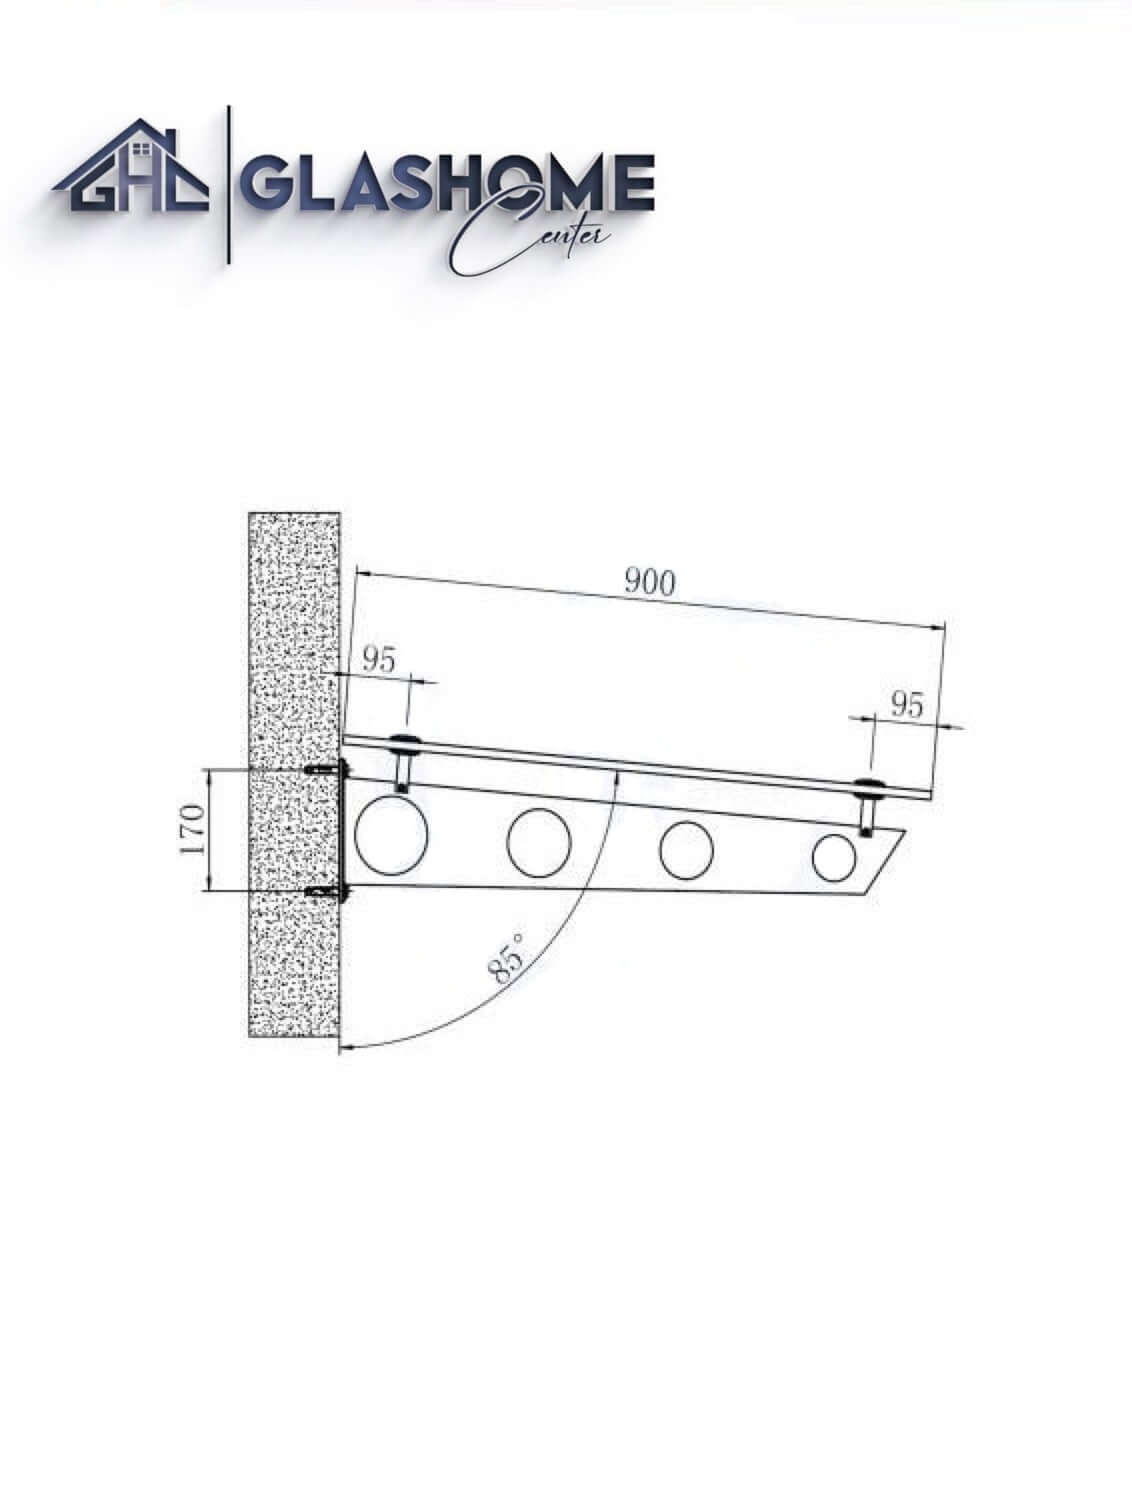 GlasHomeCenter - baldacchino in vetro - vetro trasparente - 190x90 cm - vetro di sicurezza stratificato 13,1 mm - incl.2 staffe in acciaio inossidabile nero variante "Stoccolma"